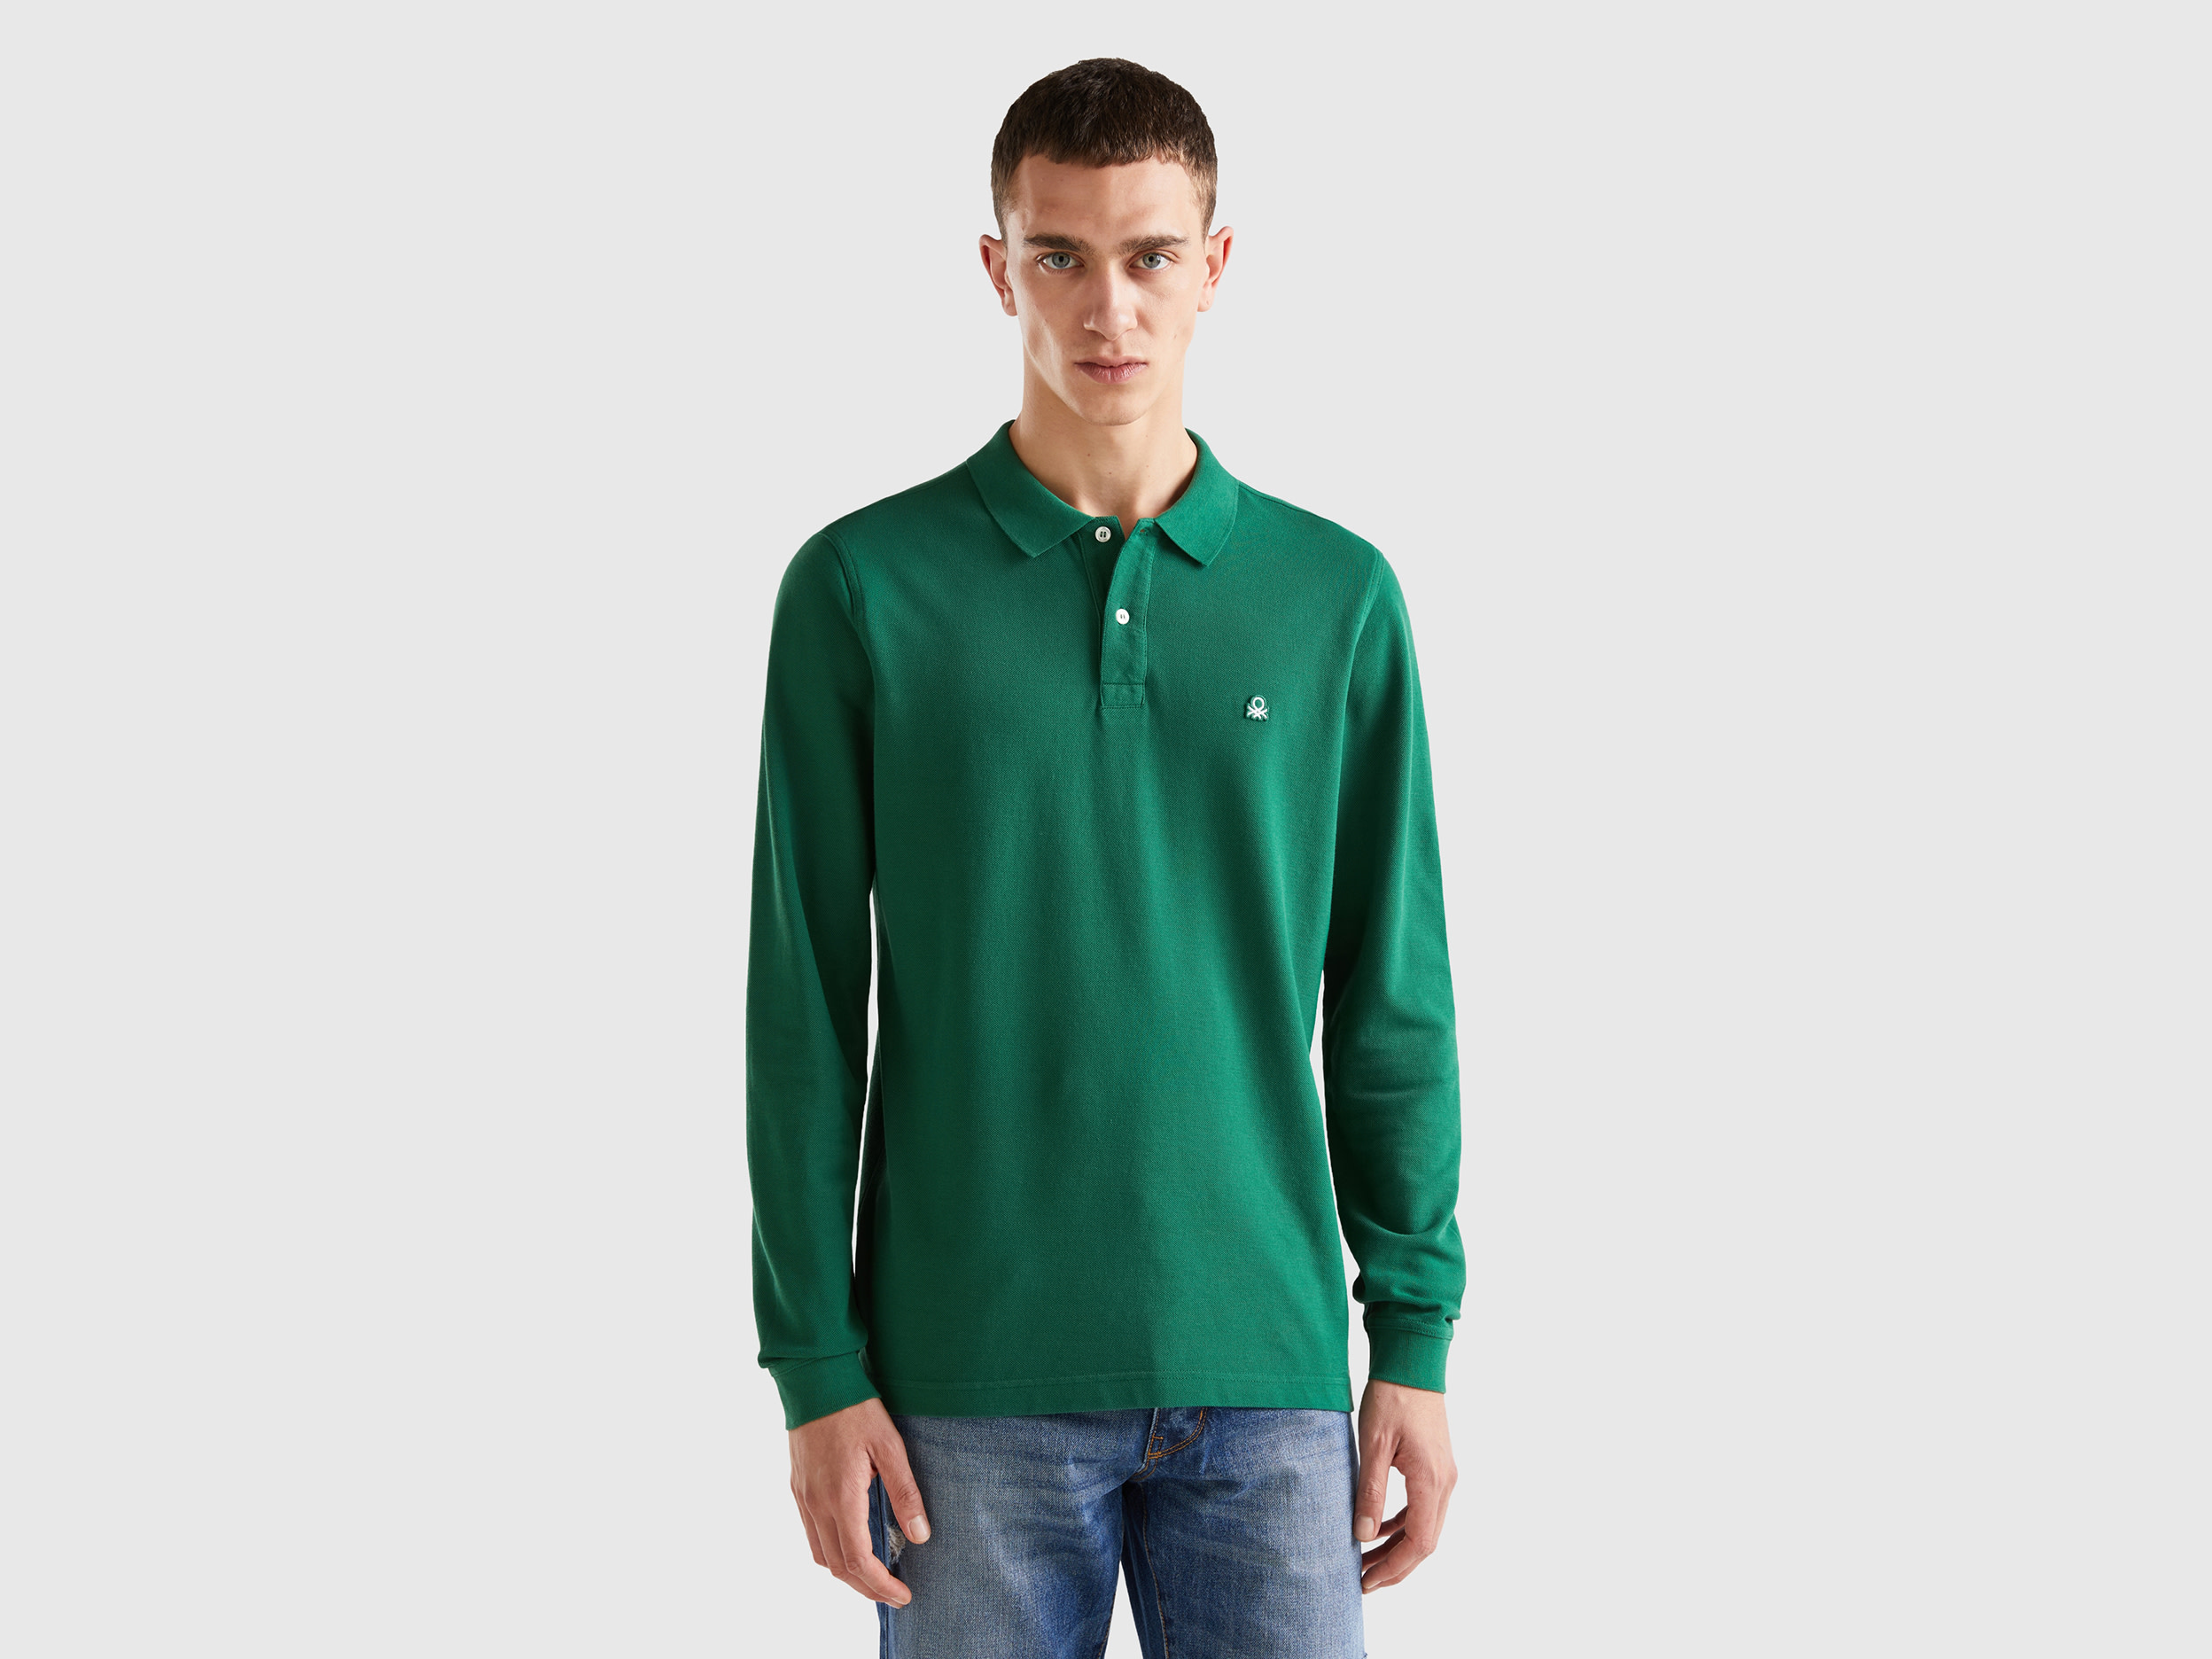 Benetton, Long Sleeve 100% Cotton Polo, size L, Dark Green, Men